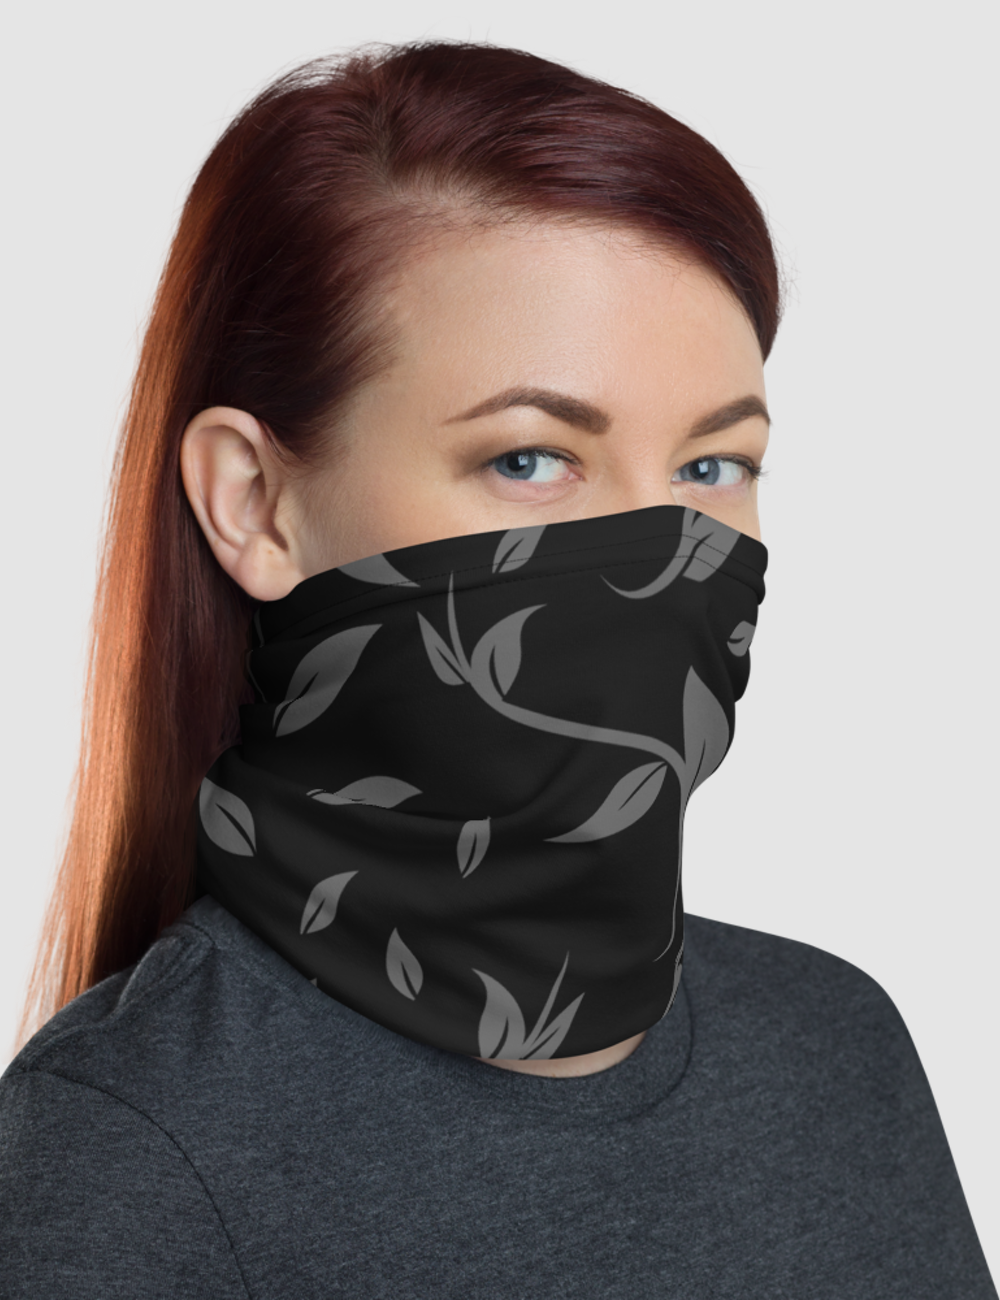 Minimal Dark Floral Print Pattern | Neck Gaiter Face Mask OniTakai